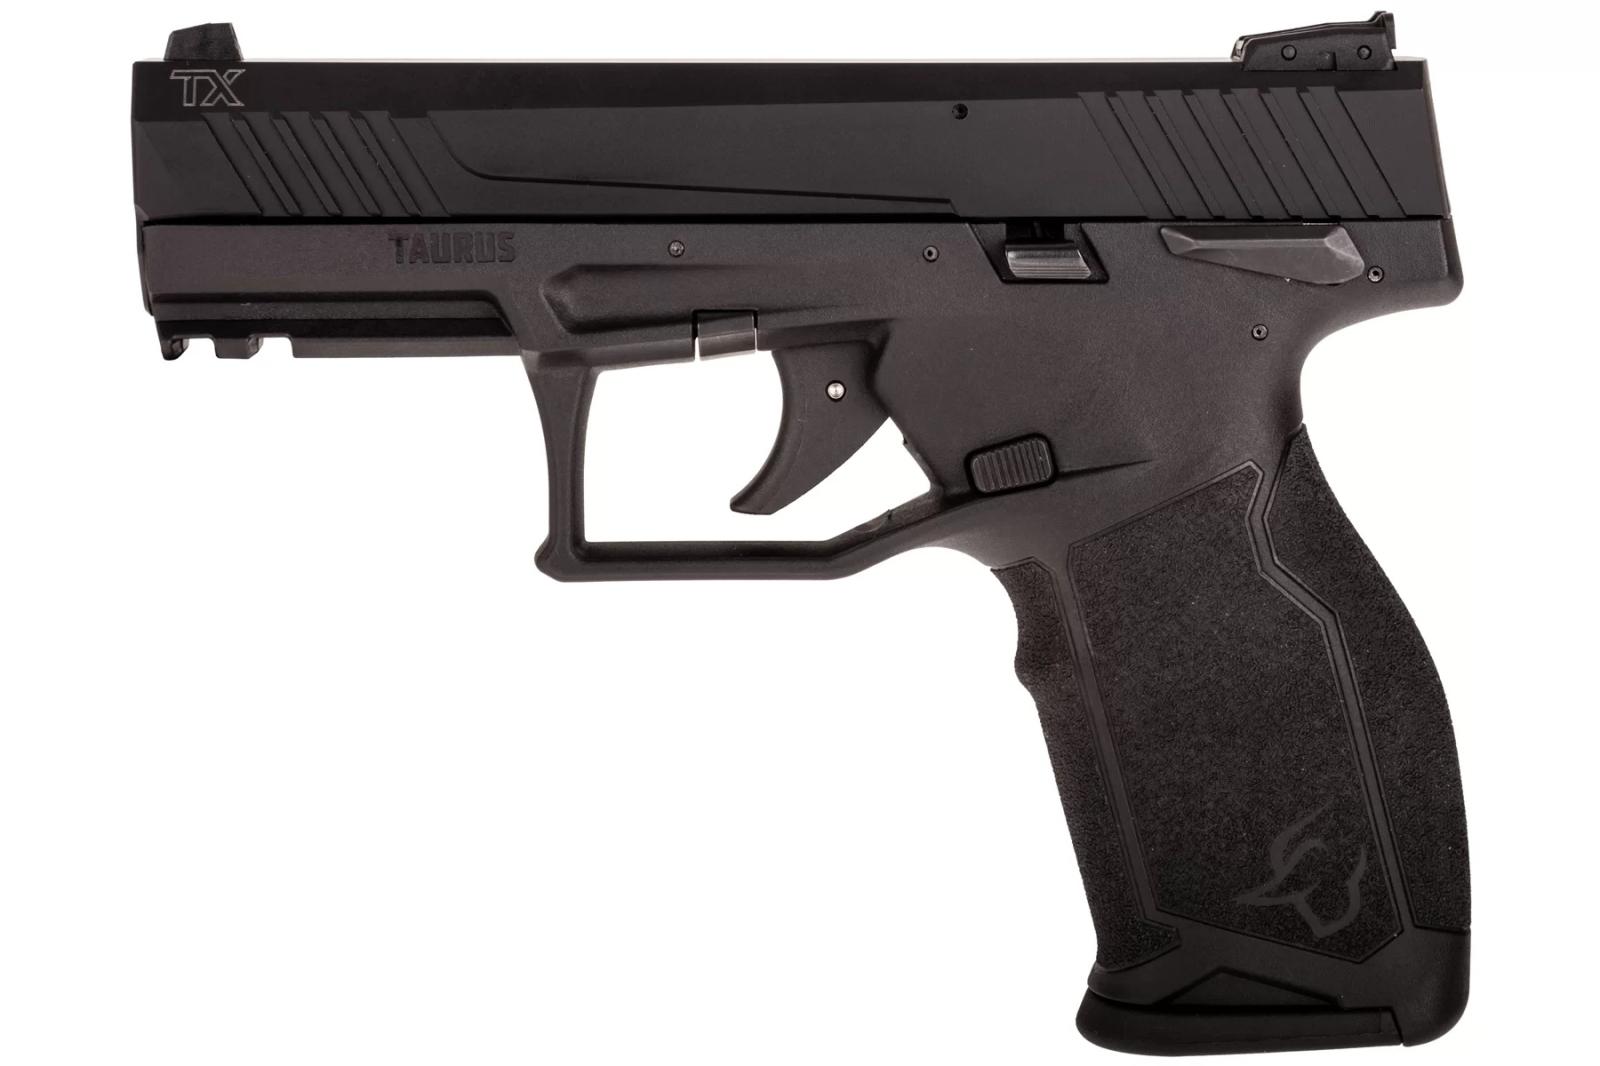 Taurus TX22 Hard Anodized 22 LR Semi-Automatic Pistol